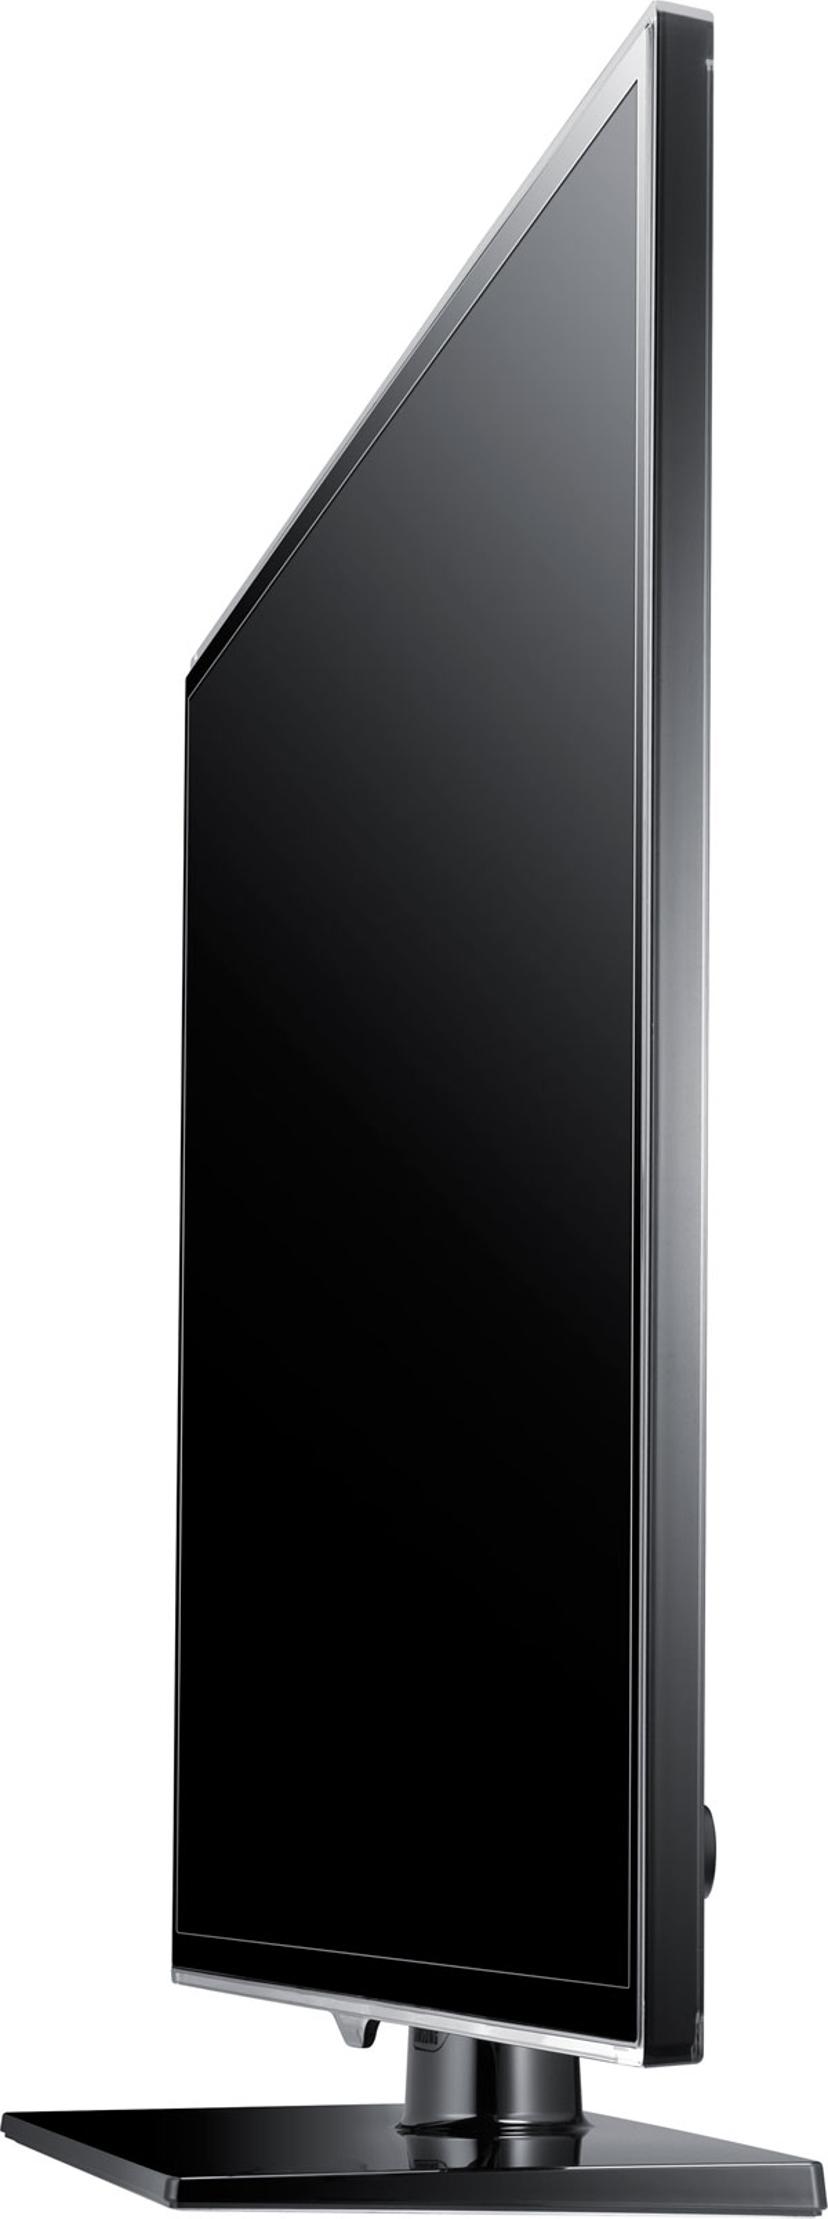 Samsung UE40ES5505 |